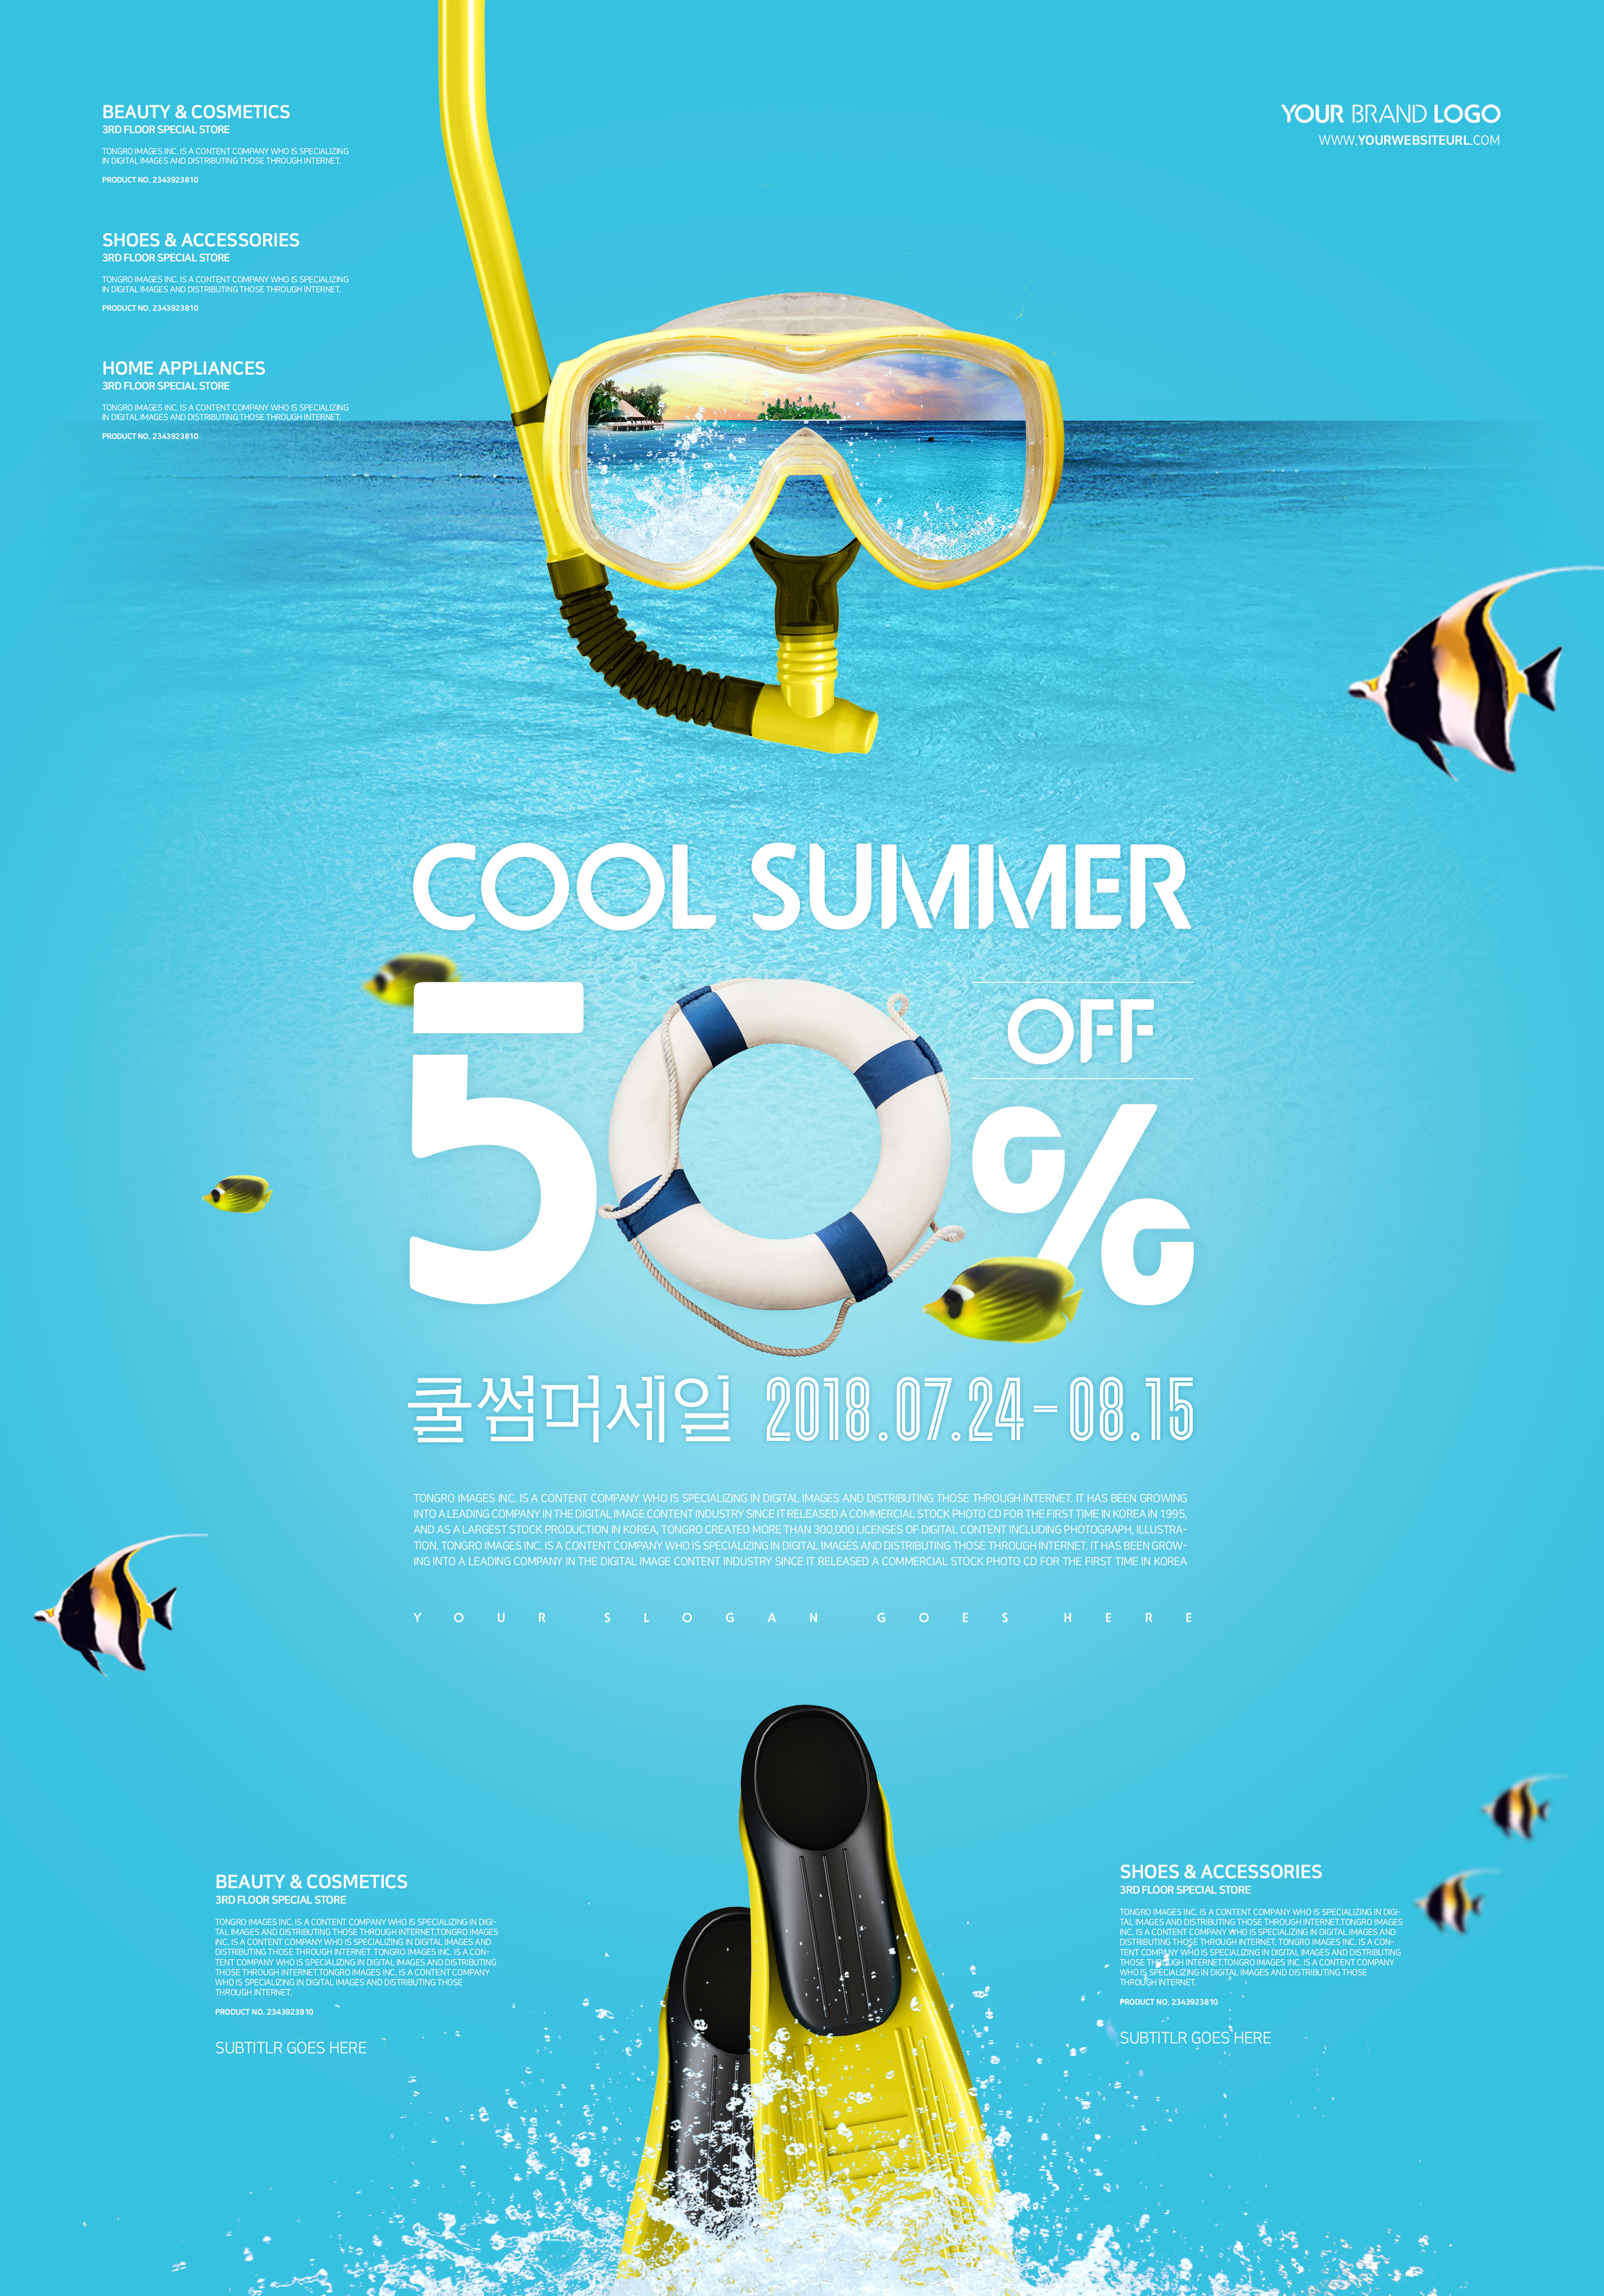 暑假应季活动折扣促销海报设计素材插图(4)